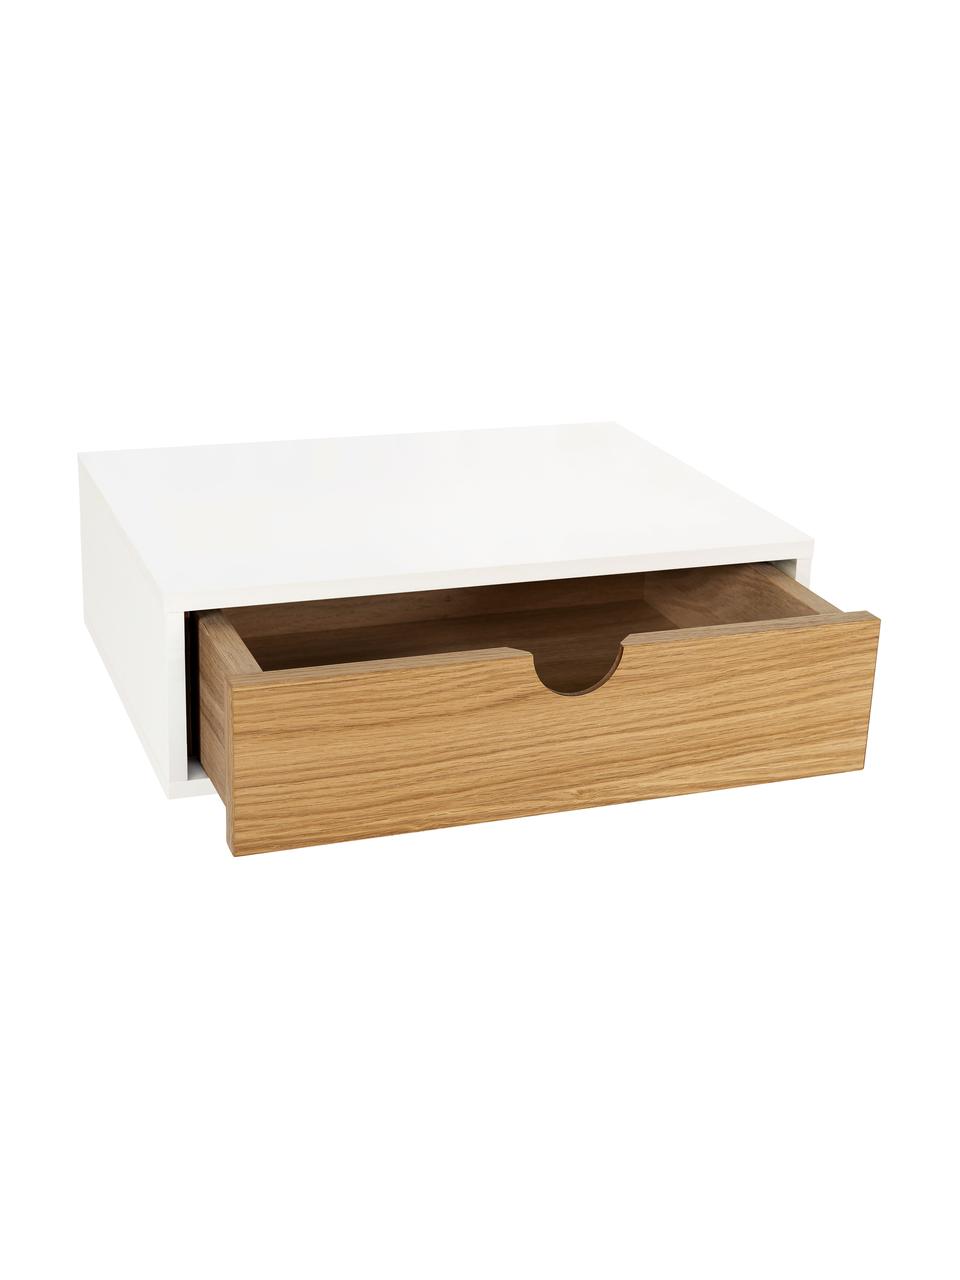 Nástěnný noční stolek Farsta, Dřevovláknitá deska střední hustoty (MDF) s dubovou dýhou, Dubové dřevo, bílá, Š 40 cm, V 15 cm